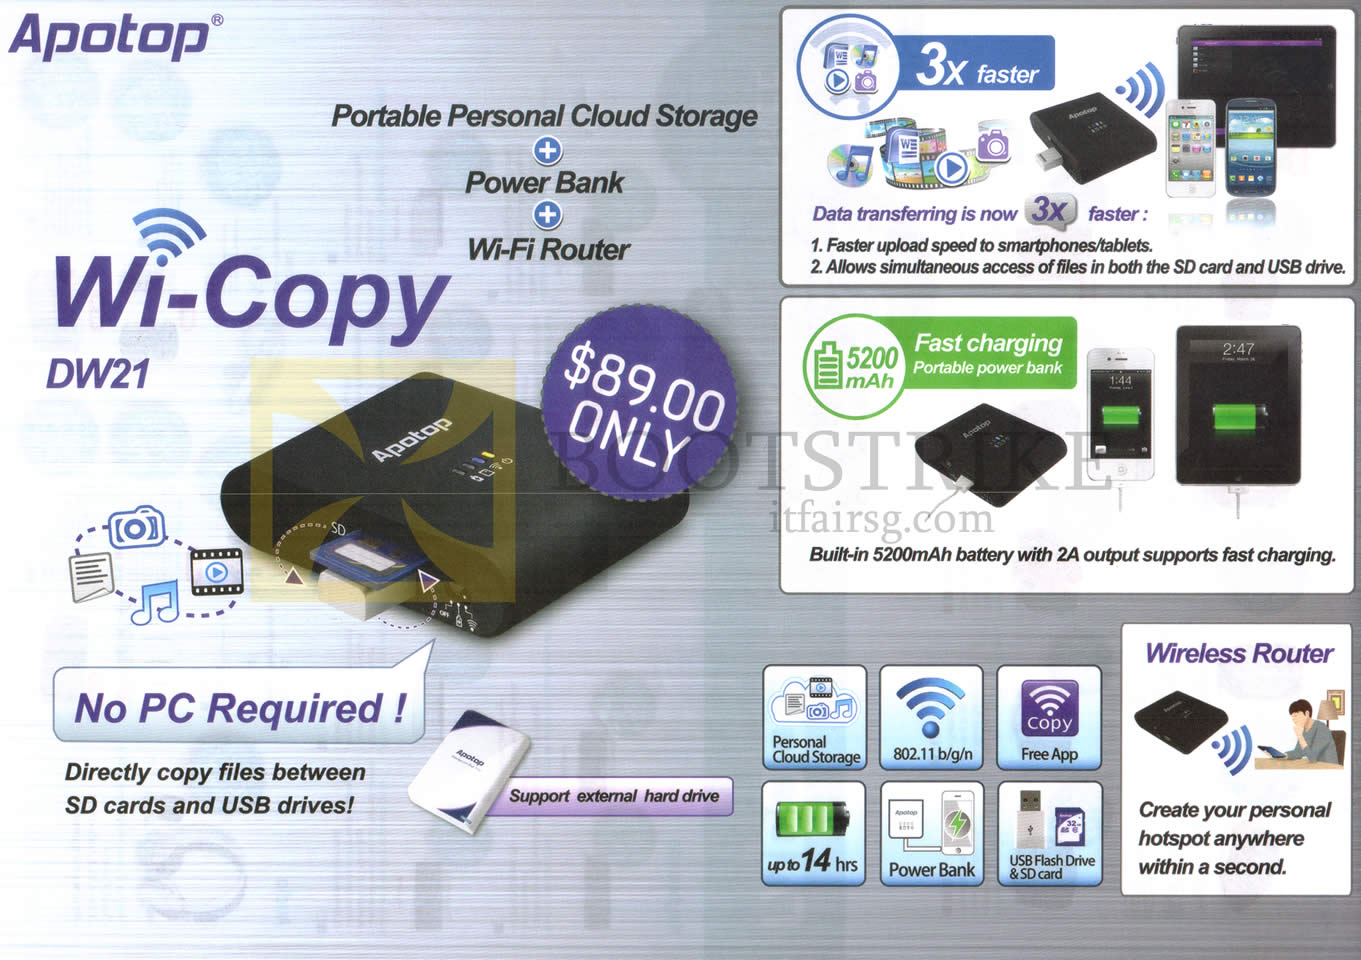 IT SHOW 2014 price list image brochure of Crimson Tech Apotop Wi-Copy Cloud Storage DW21, Power Bank, Router